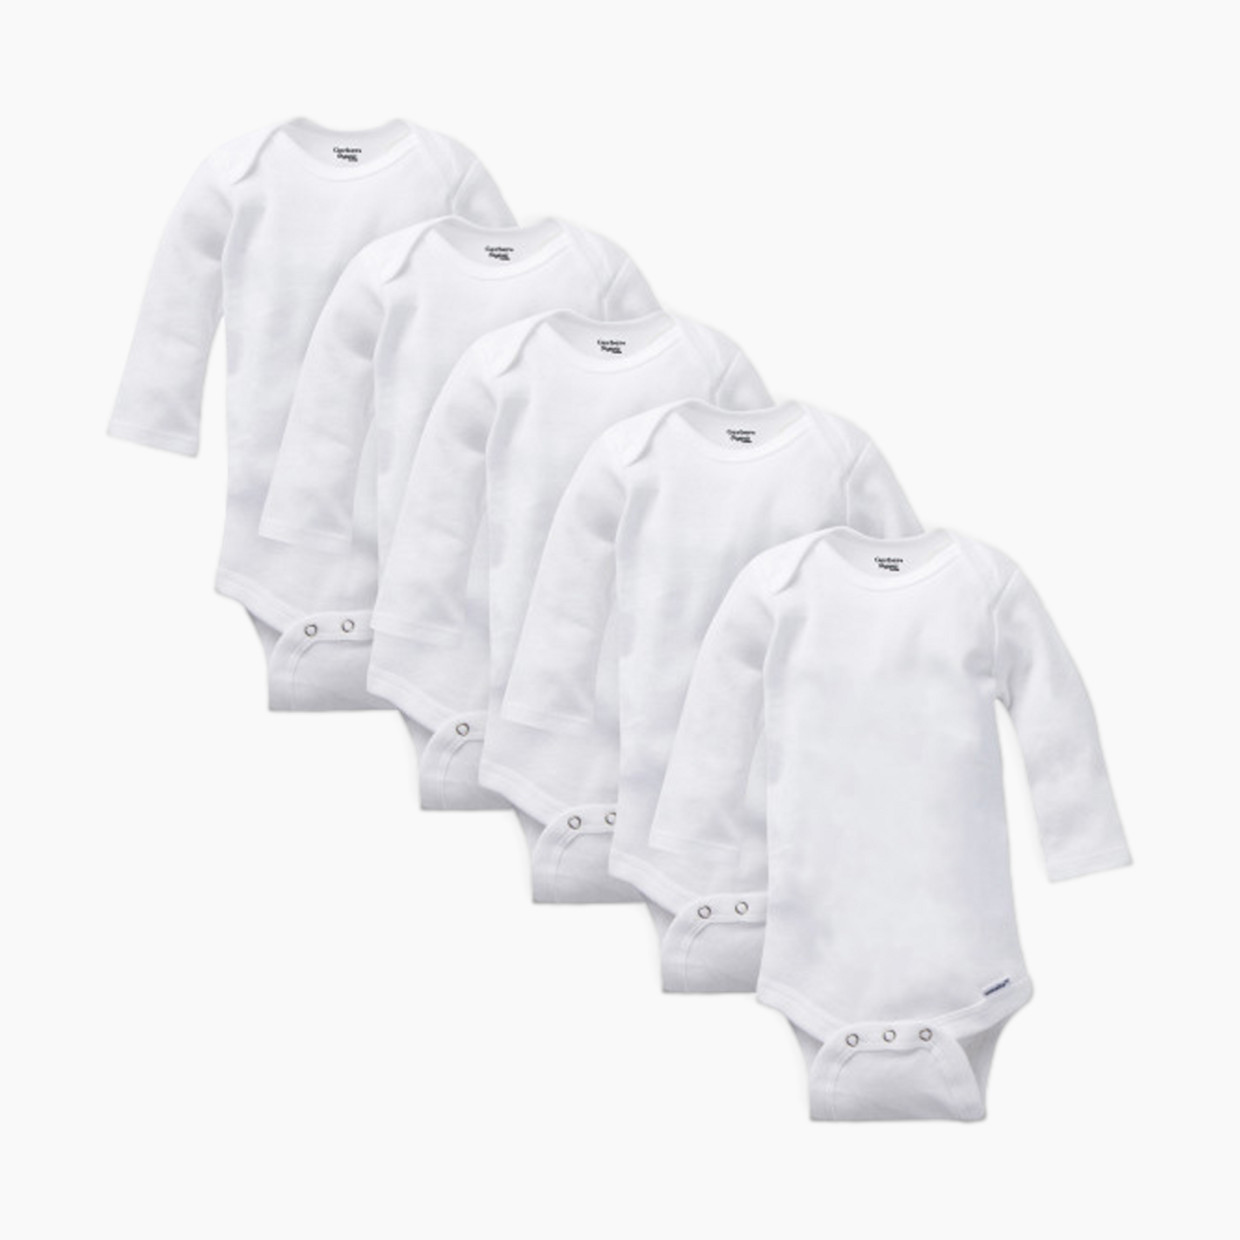 Gerber Organic Long Sleeve Solid Onesies Bodysuits (5 Pack) - White, 12 M.